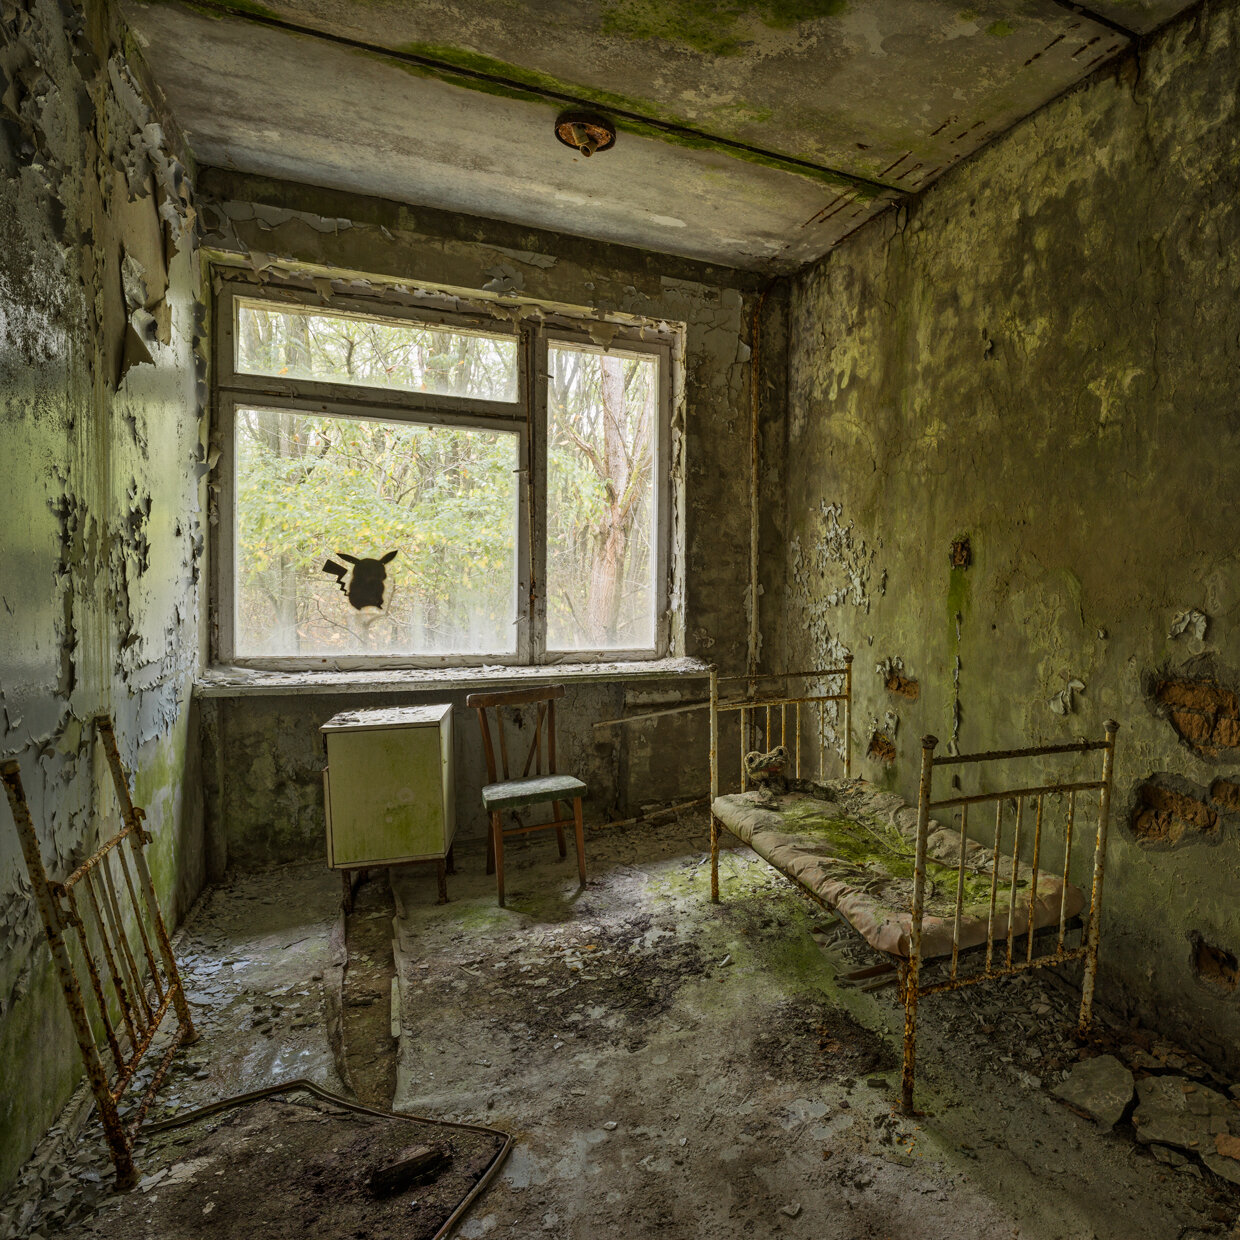 Chernobyl_31.jpg